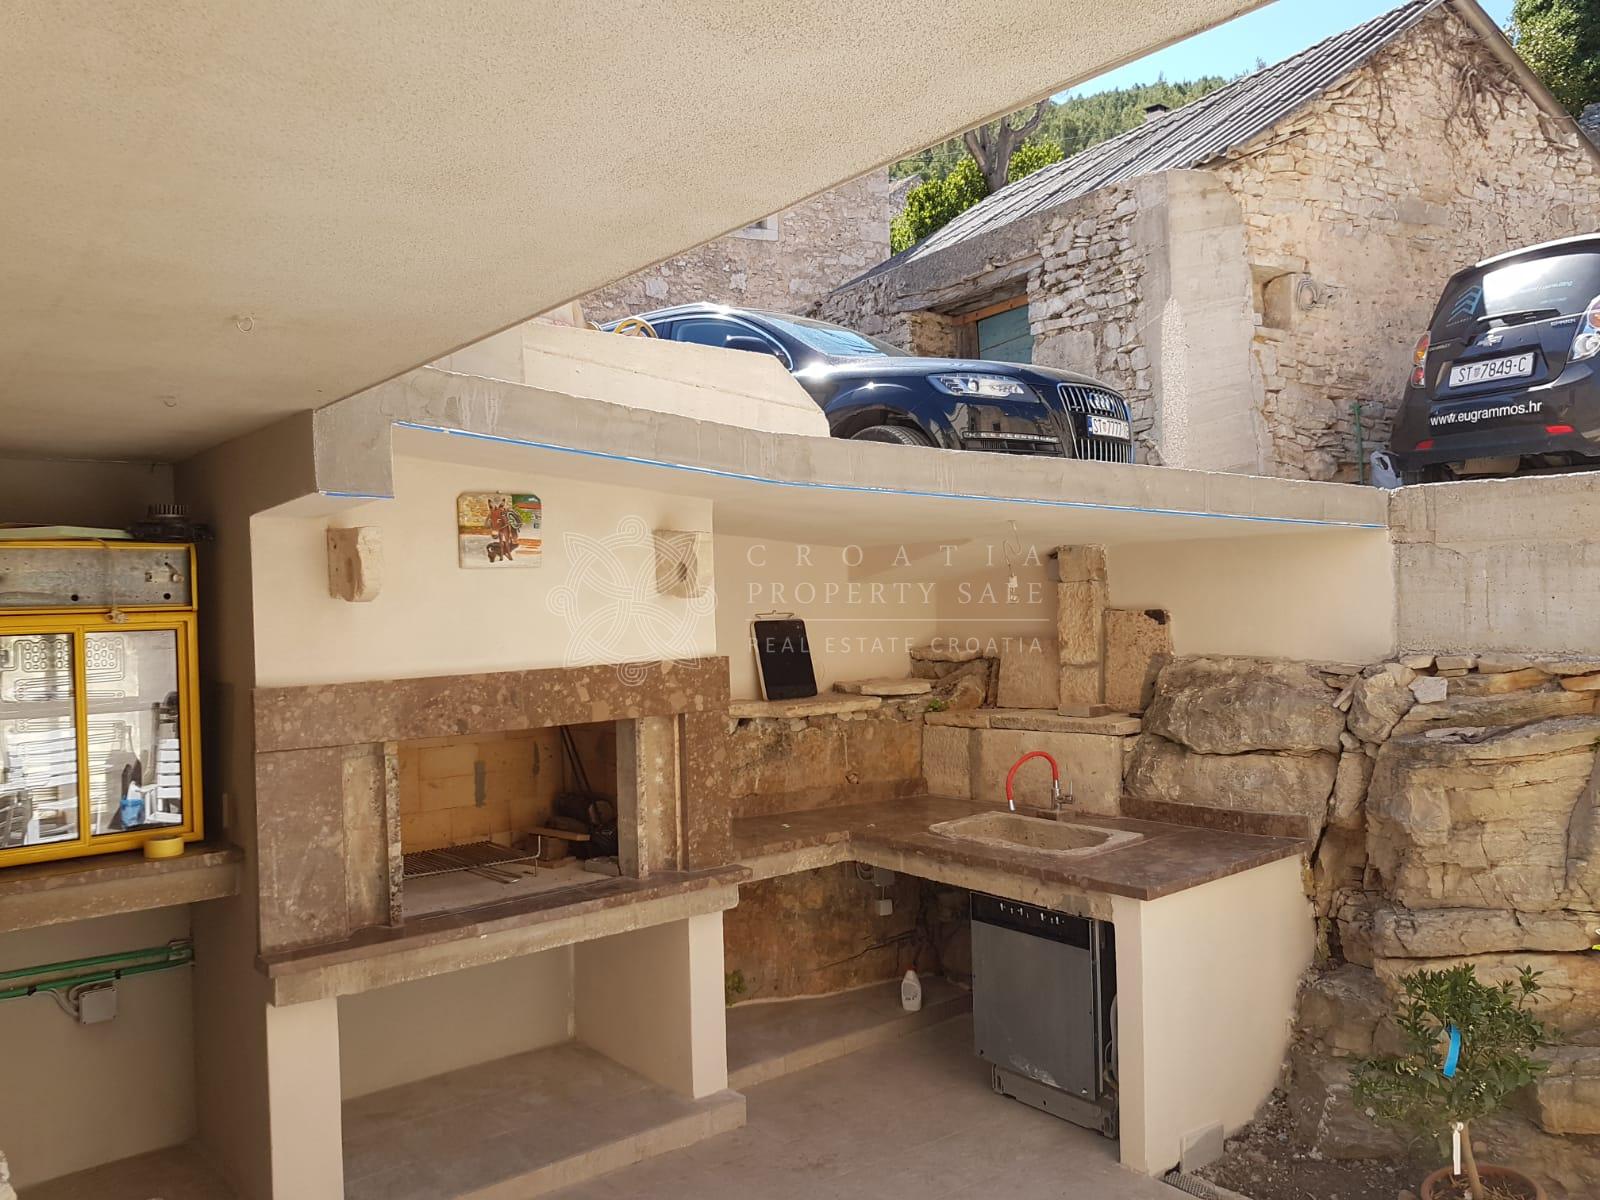 Croatia island Korcula Renovated Stone house for sale